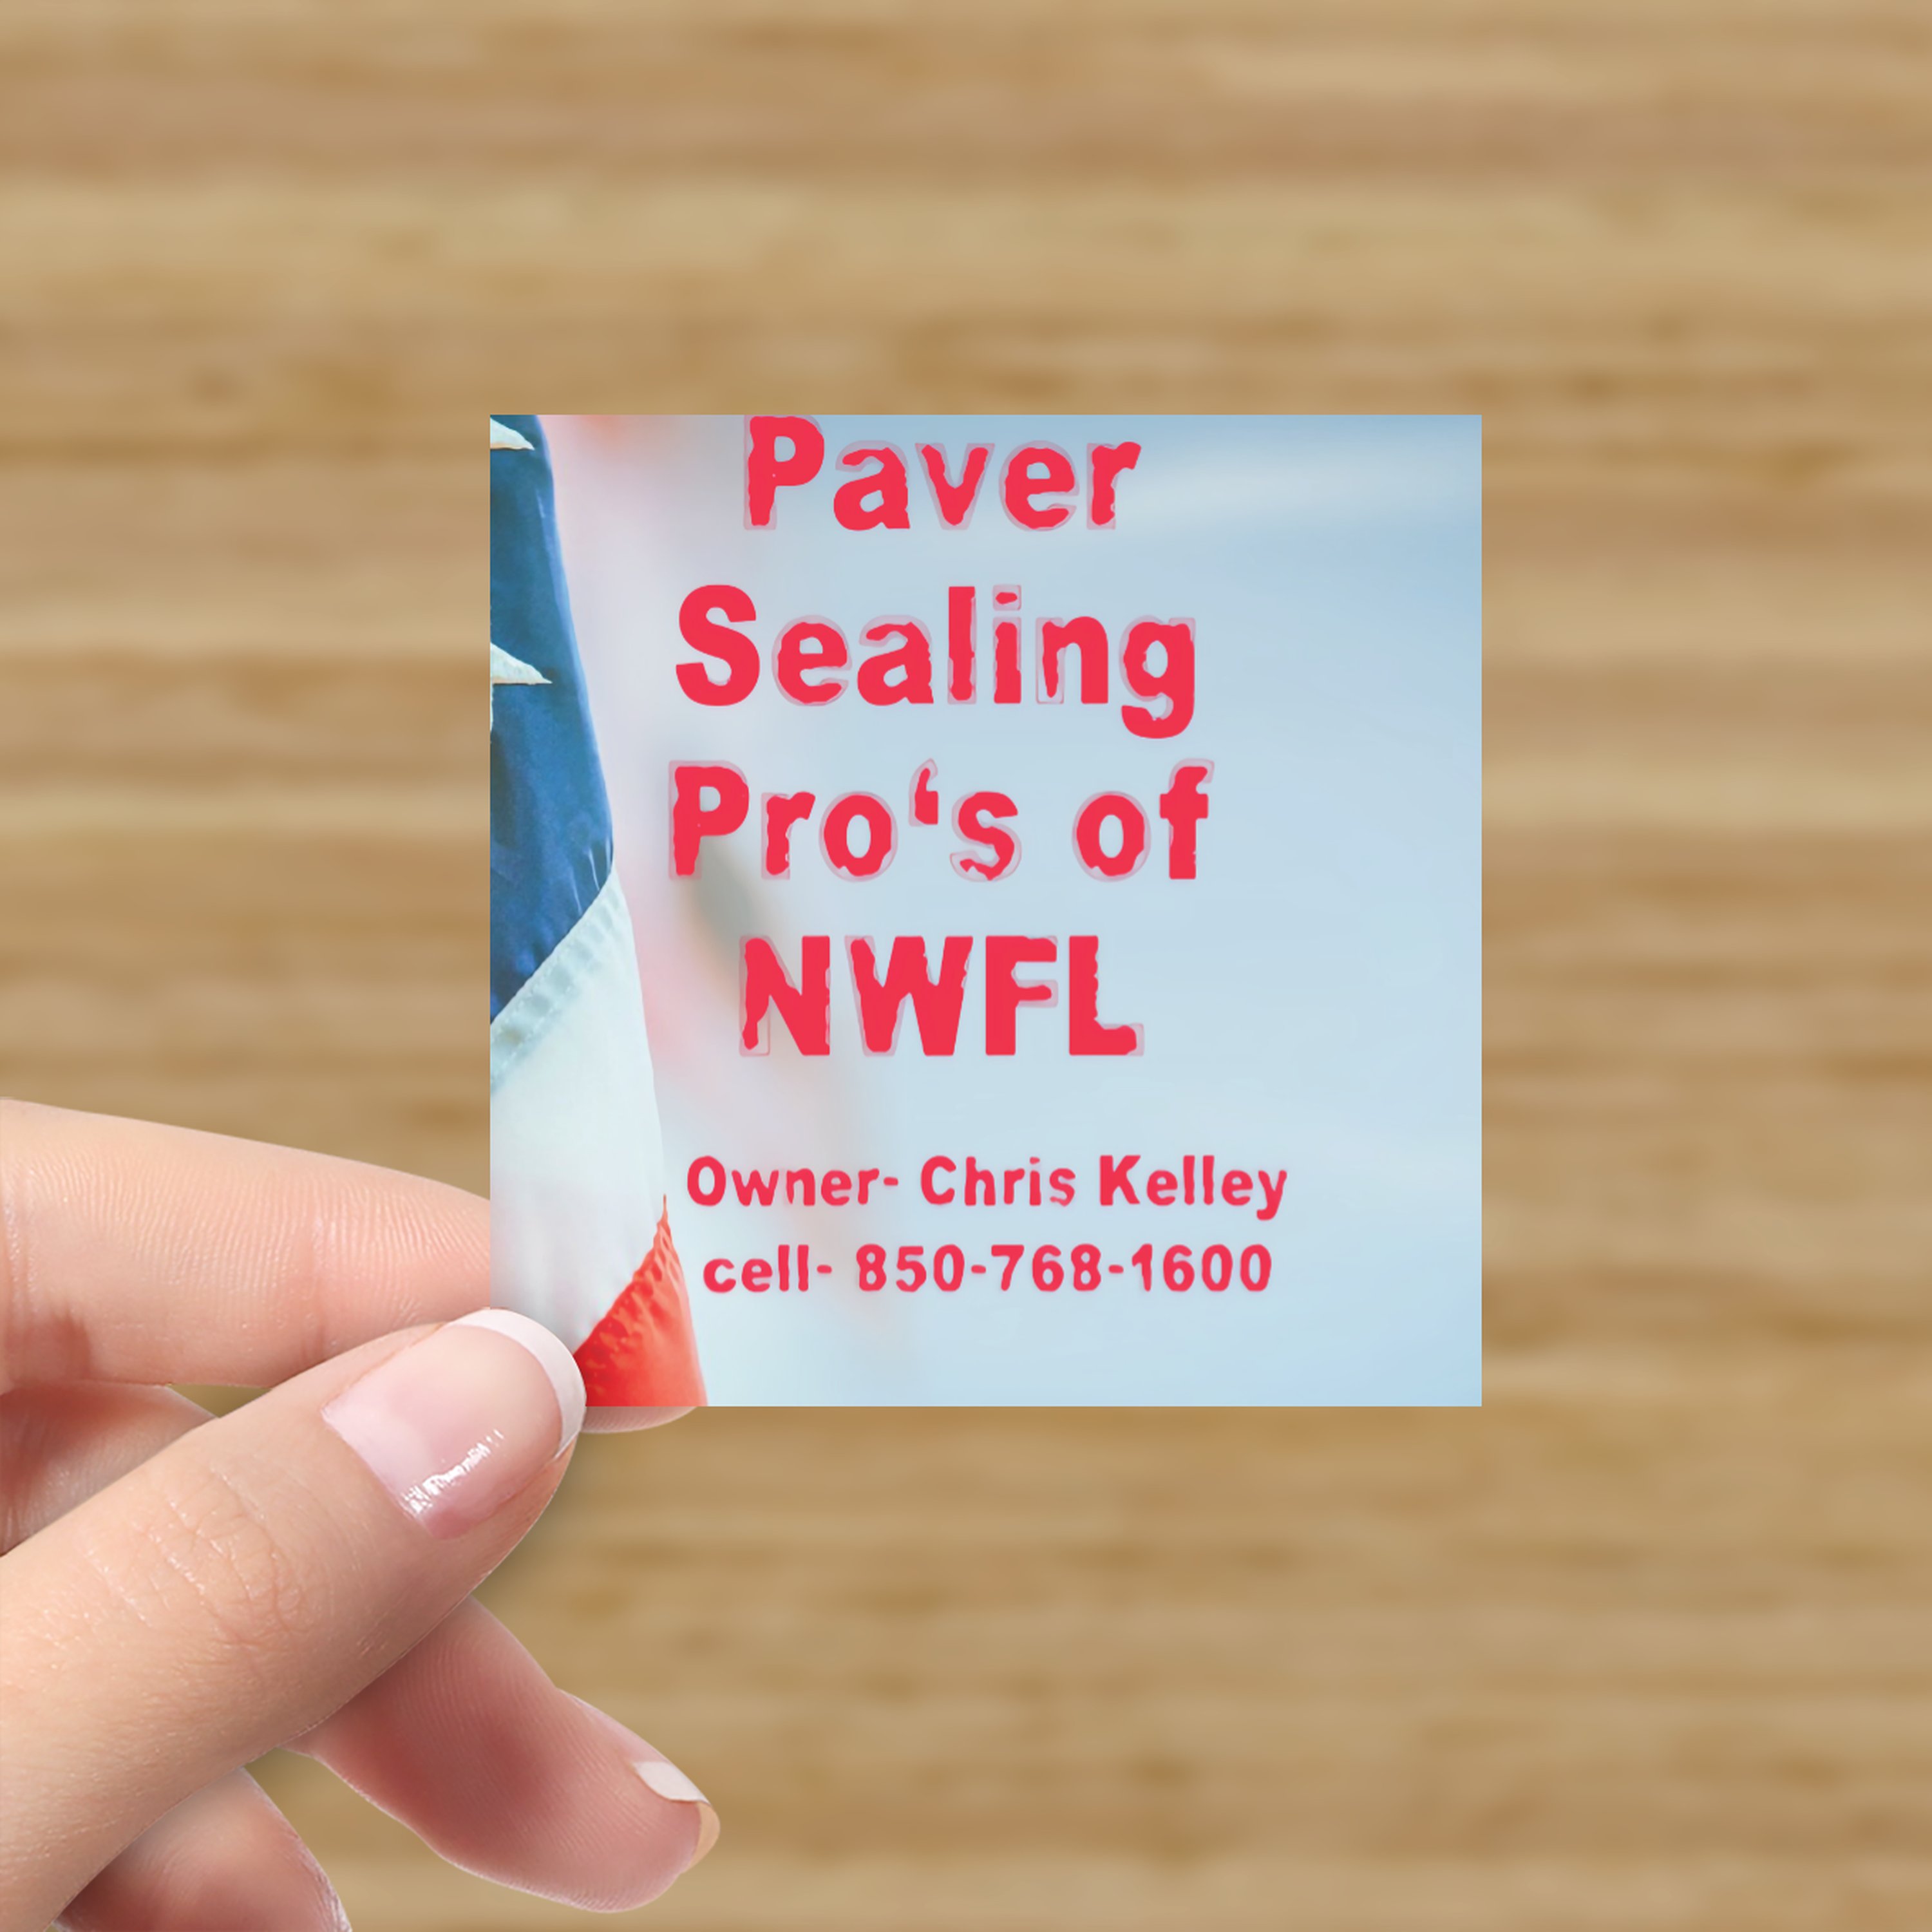 Paver Sealing Pros of NWFL Logo